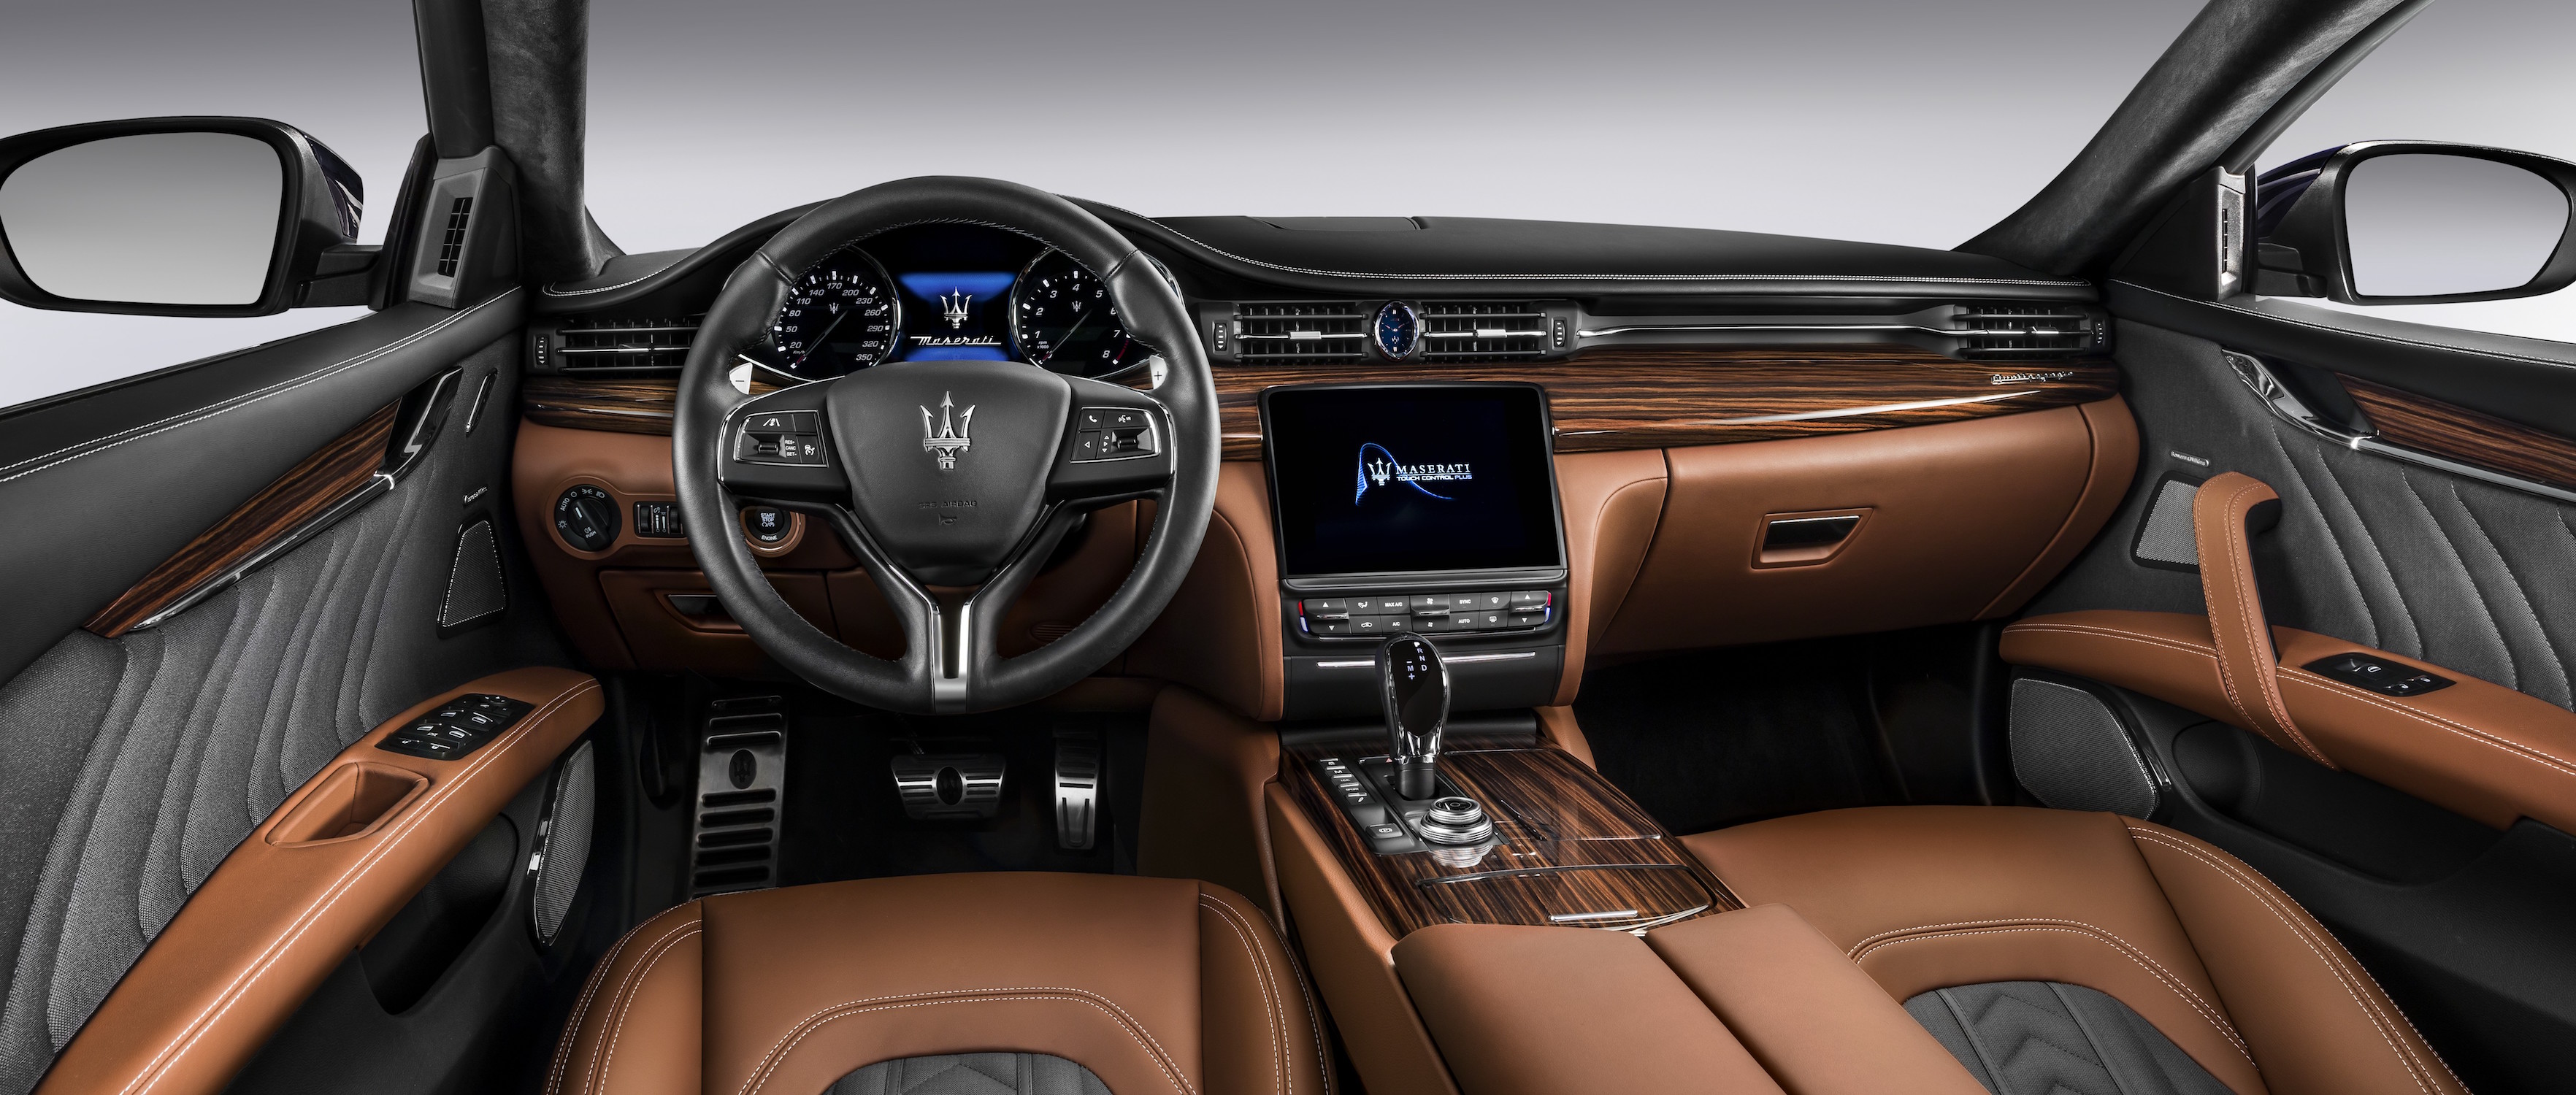 Nuova-Maserati-Quattroporte-2017-restyling-6